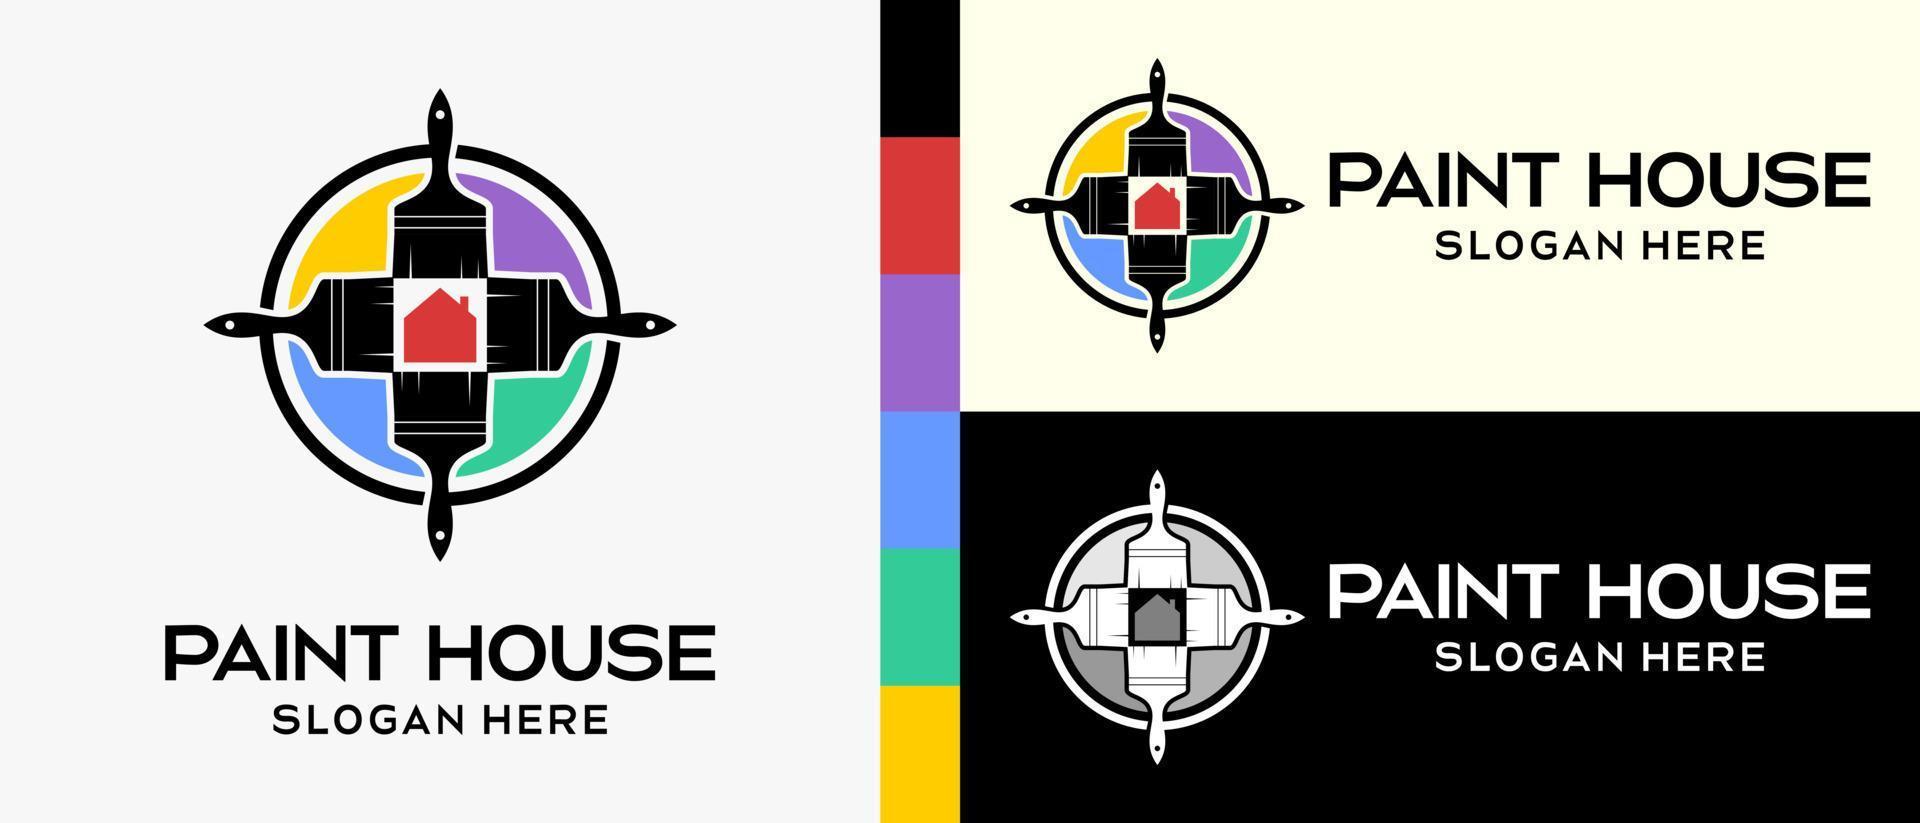 modèle de conception de logo de peinture de bâtiment cool. quatre pinceaux avec une silhouette et une icône de maison dans un cercle. illustration vectorielle d'un logo pour mur ou peinture de bâtiment. vecteur premium